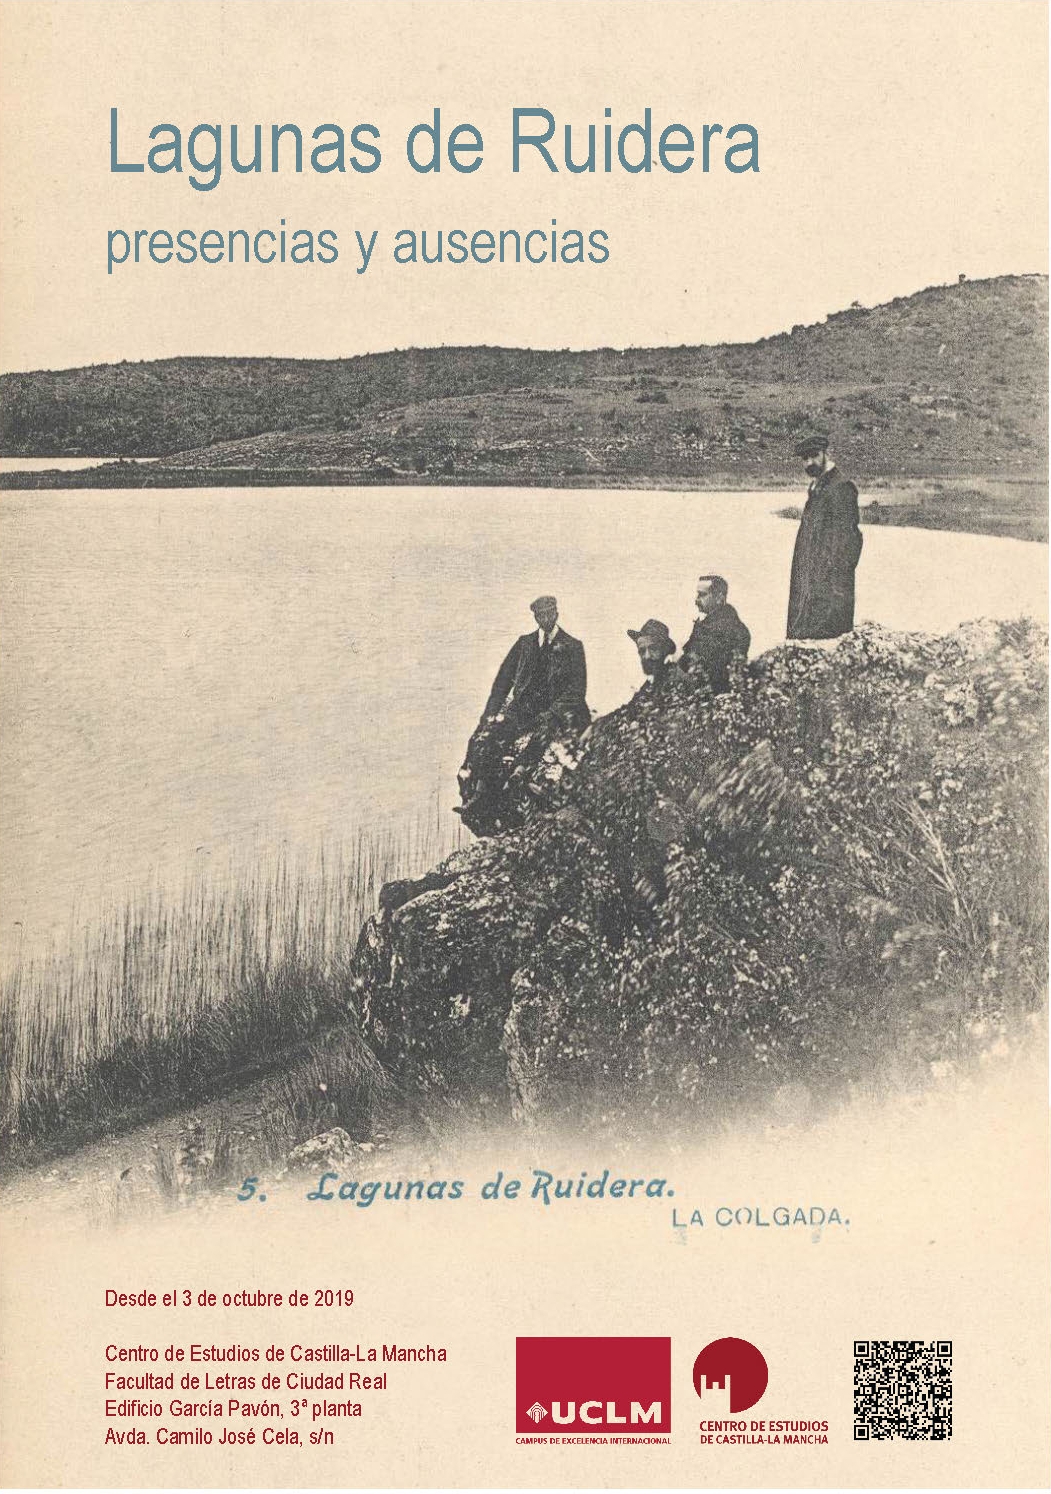 Lagunas de Ruidera: presencias y ausencias [exposición]